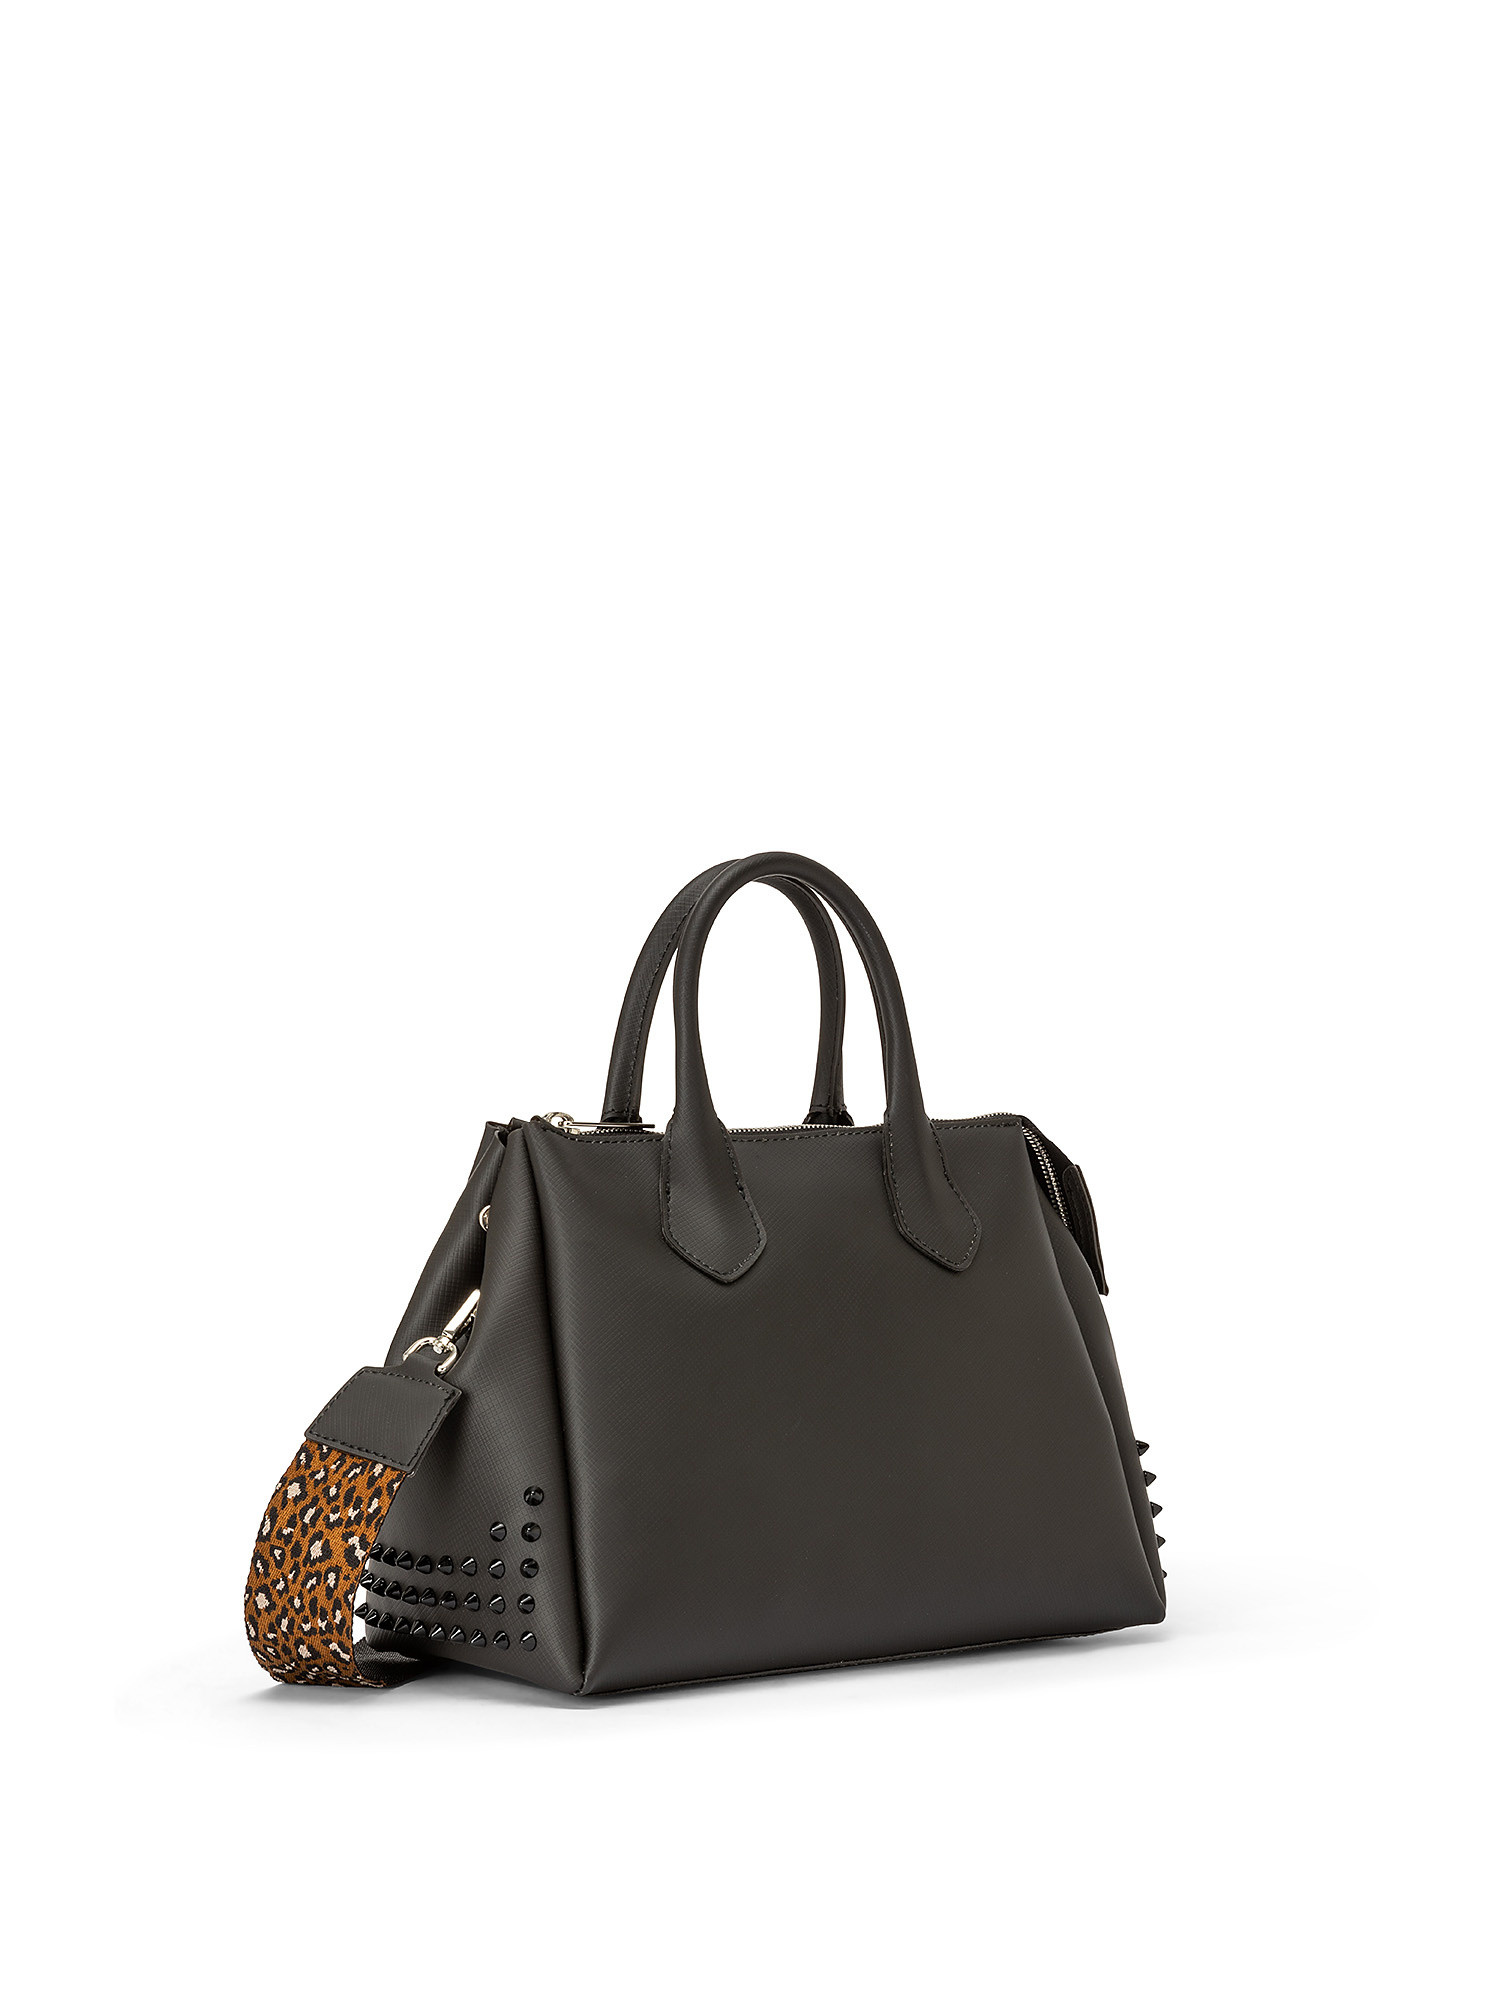 Medium handbag, Black, large image number 1